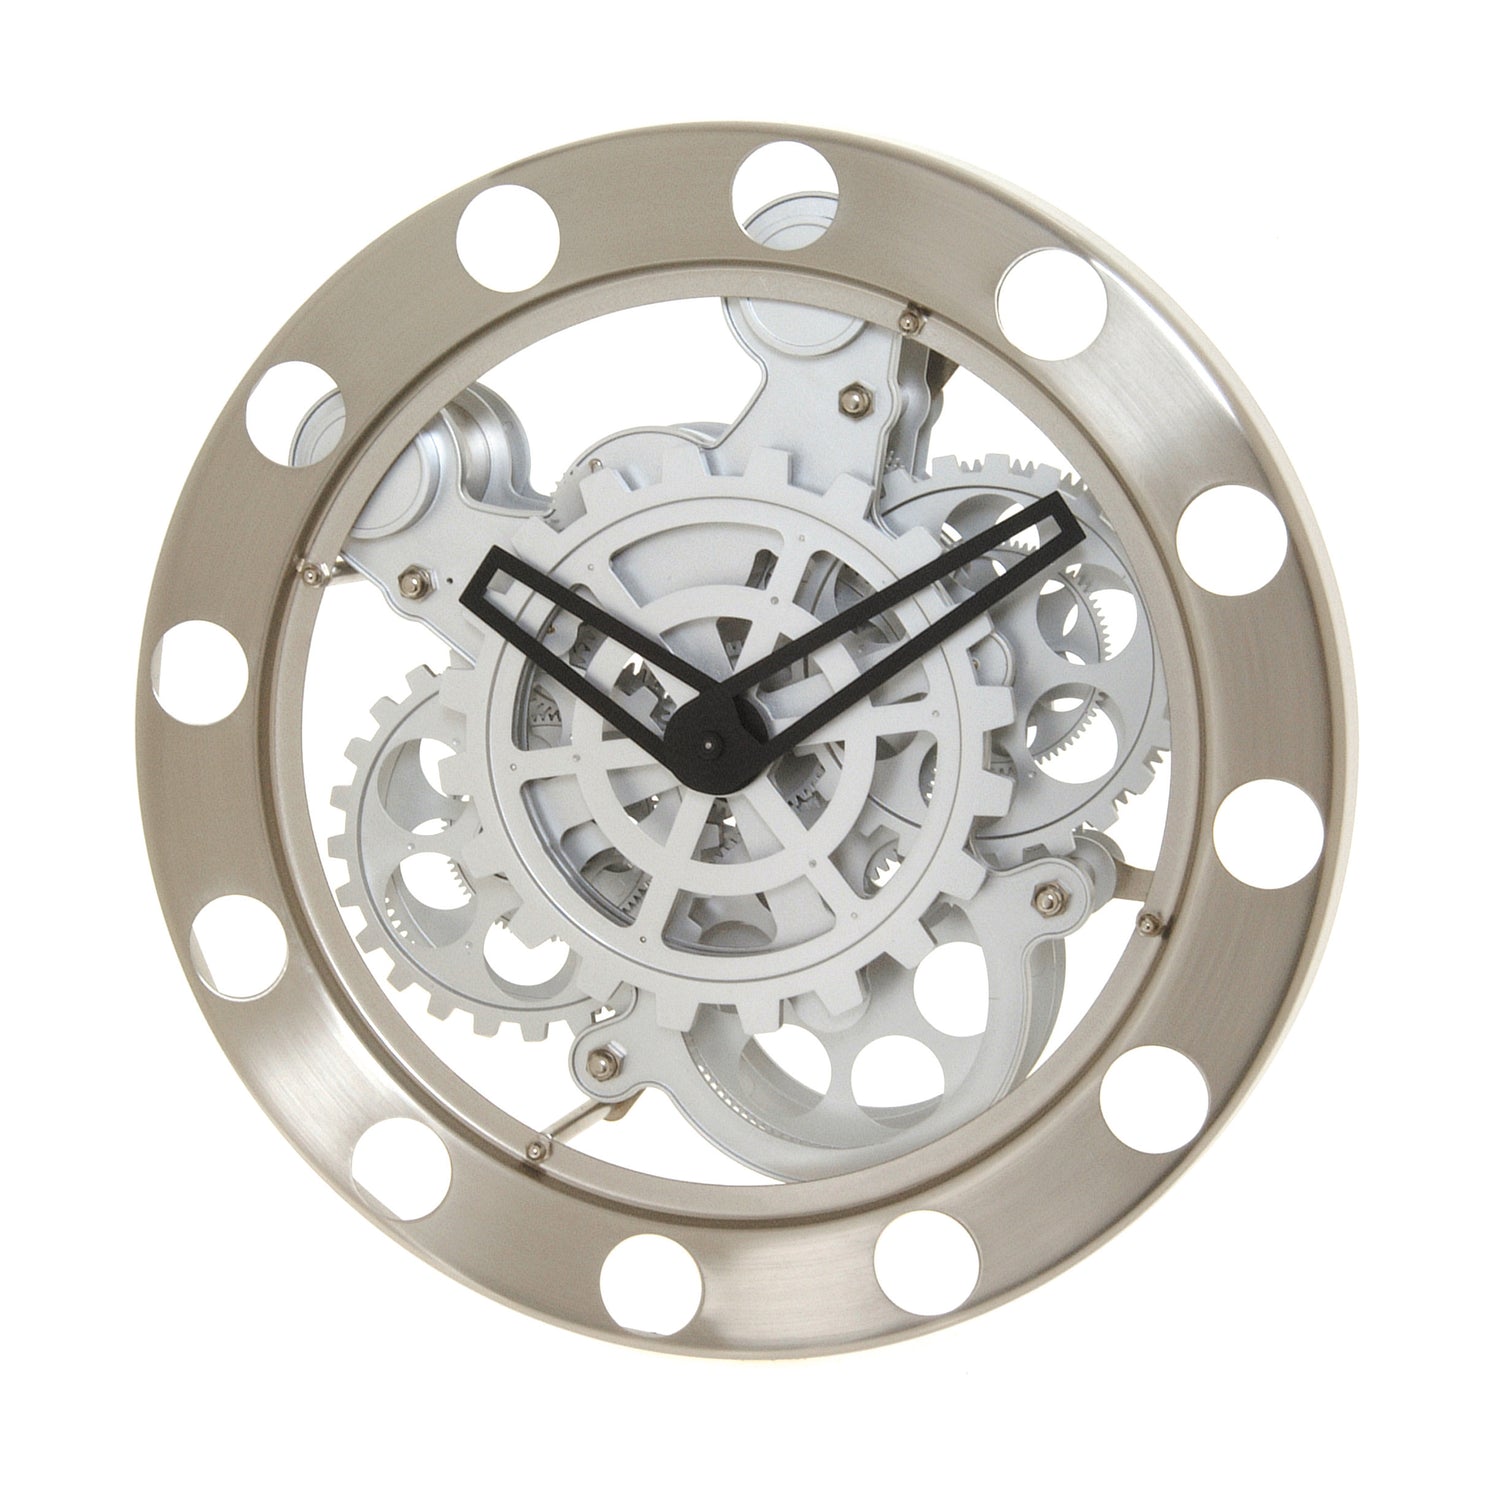 Kikkerland Gear Wall Clock - Nickel/White